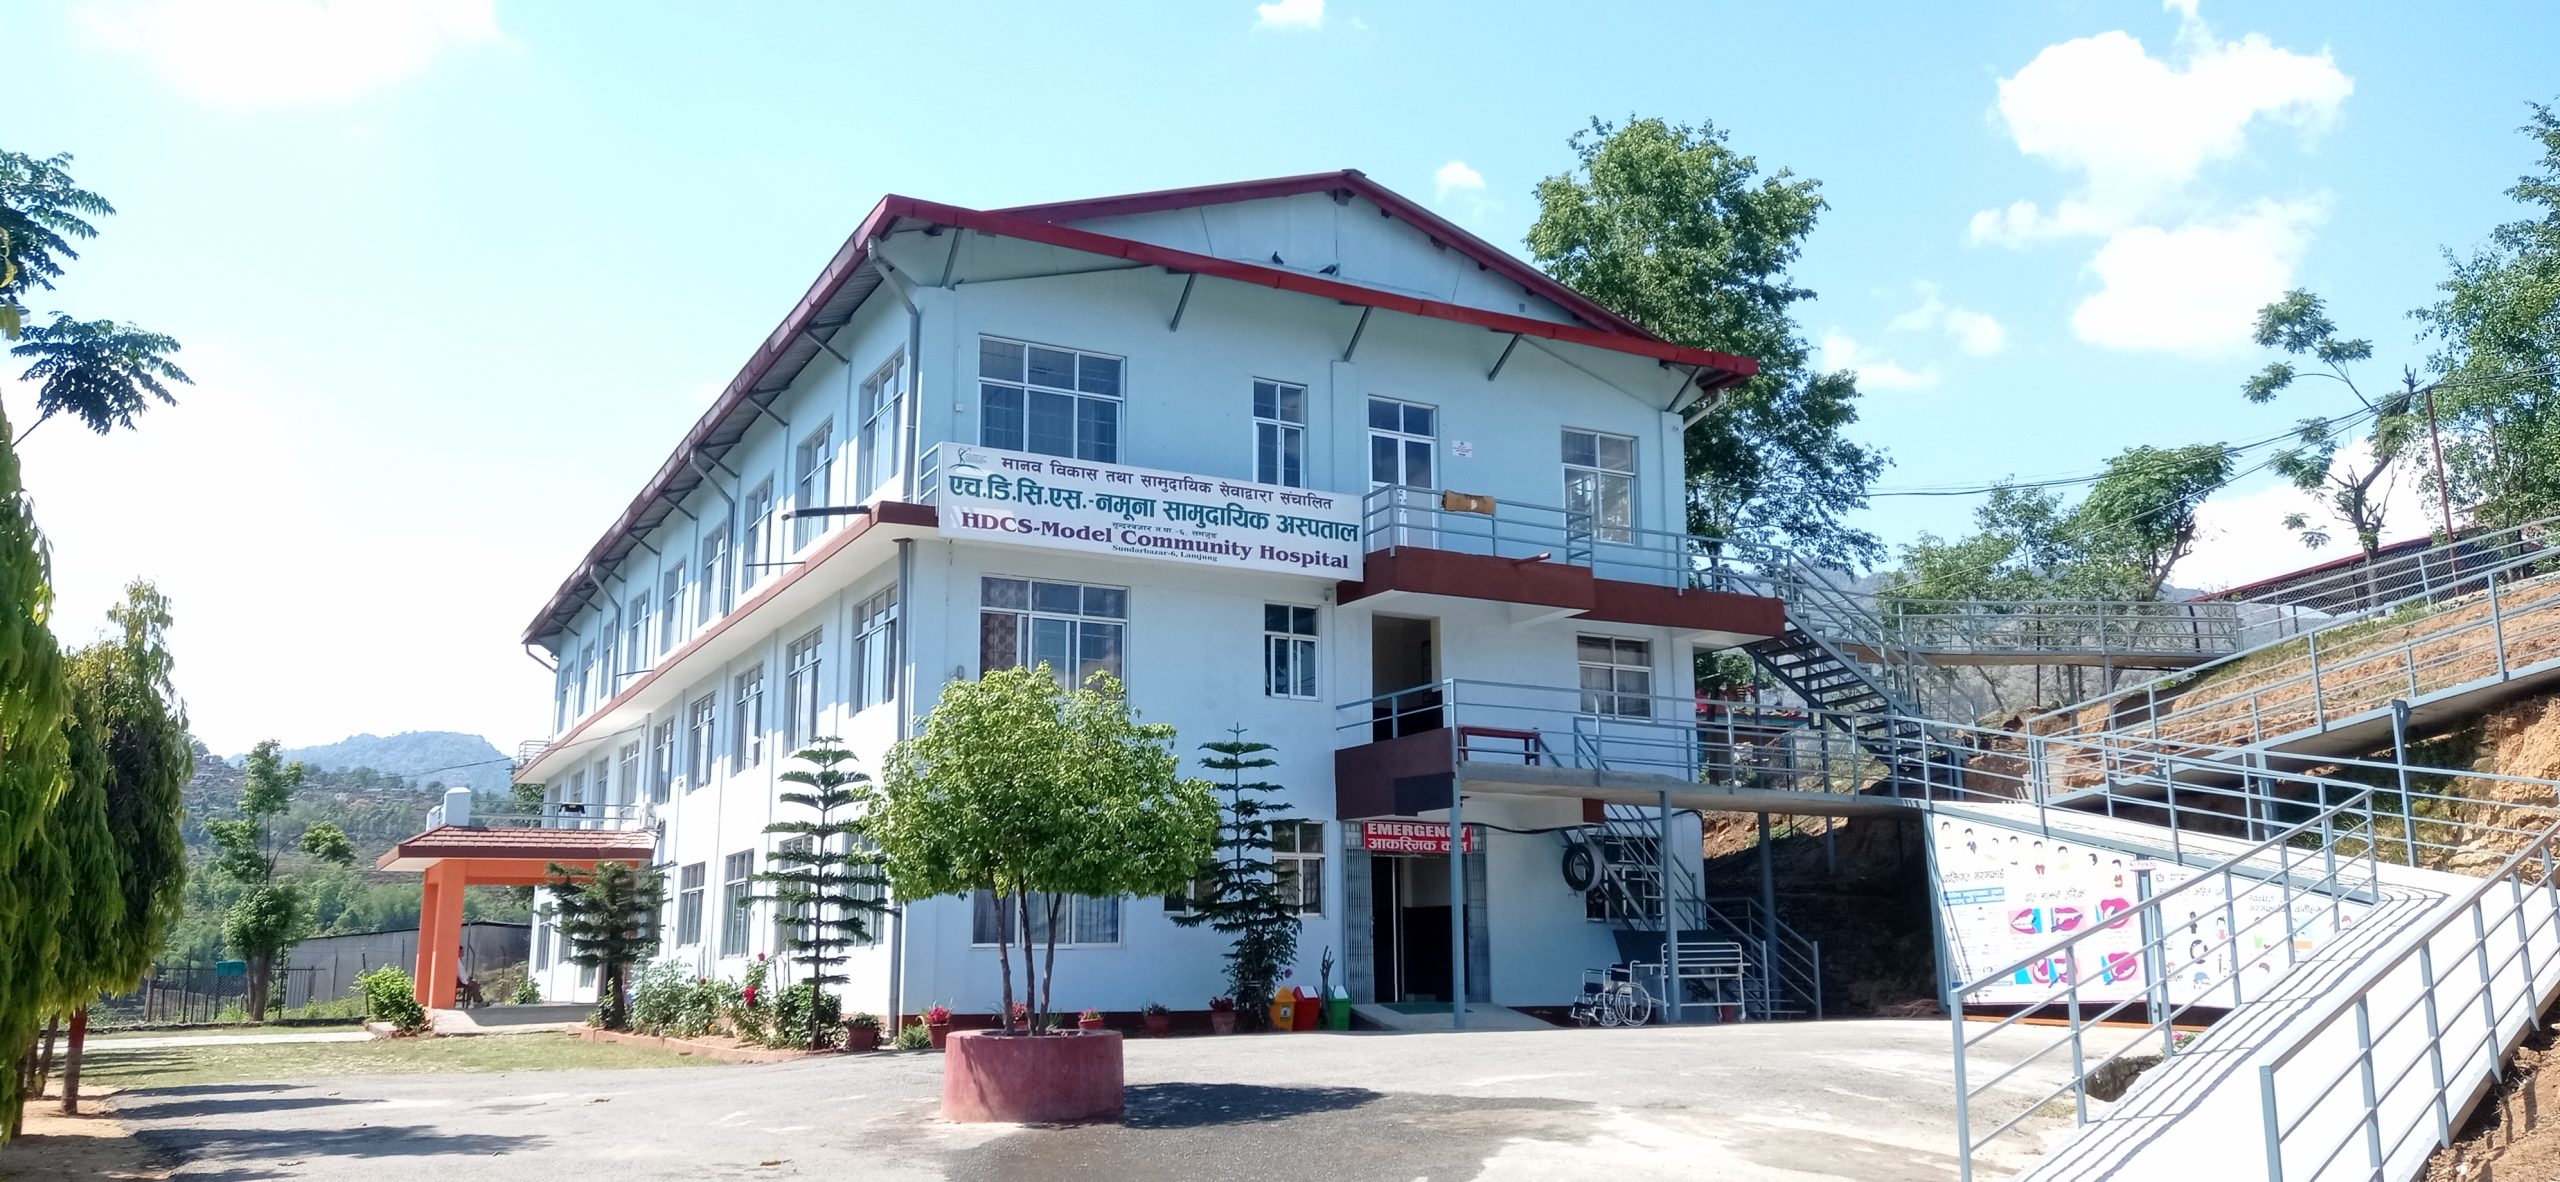 Namuna Community Hospital (NCH)